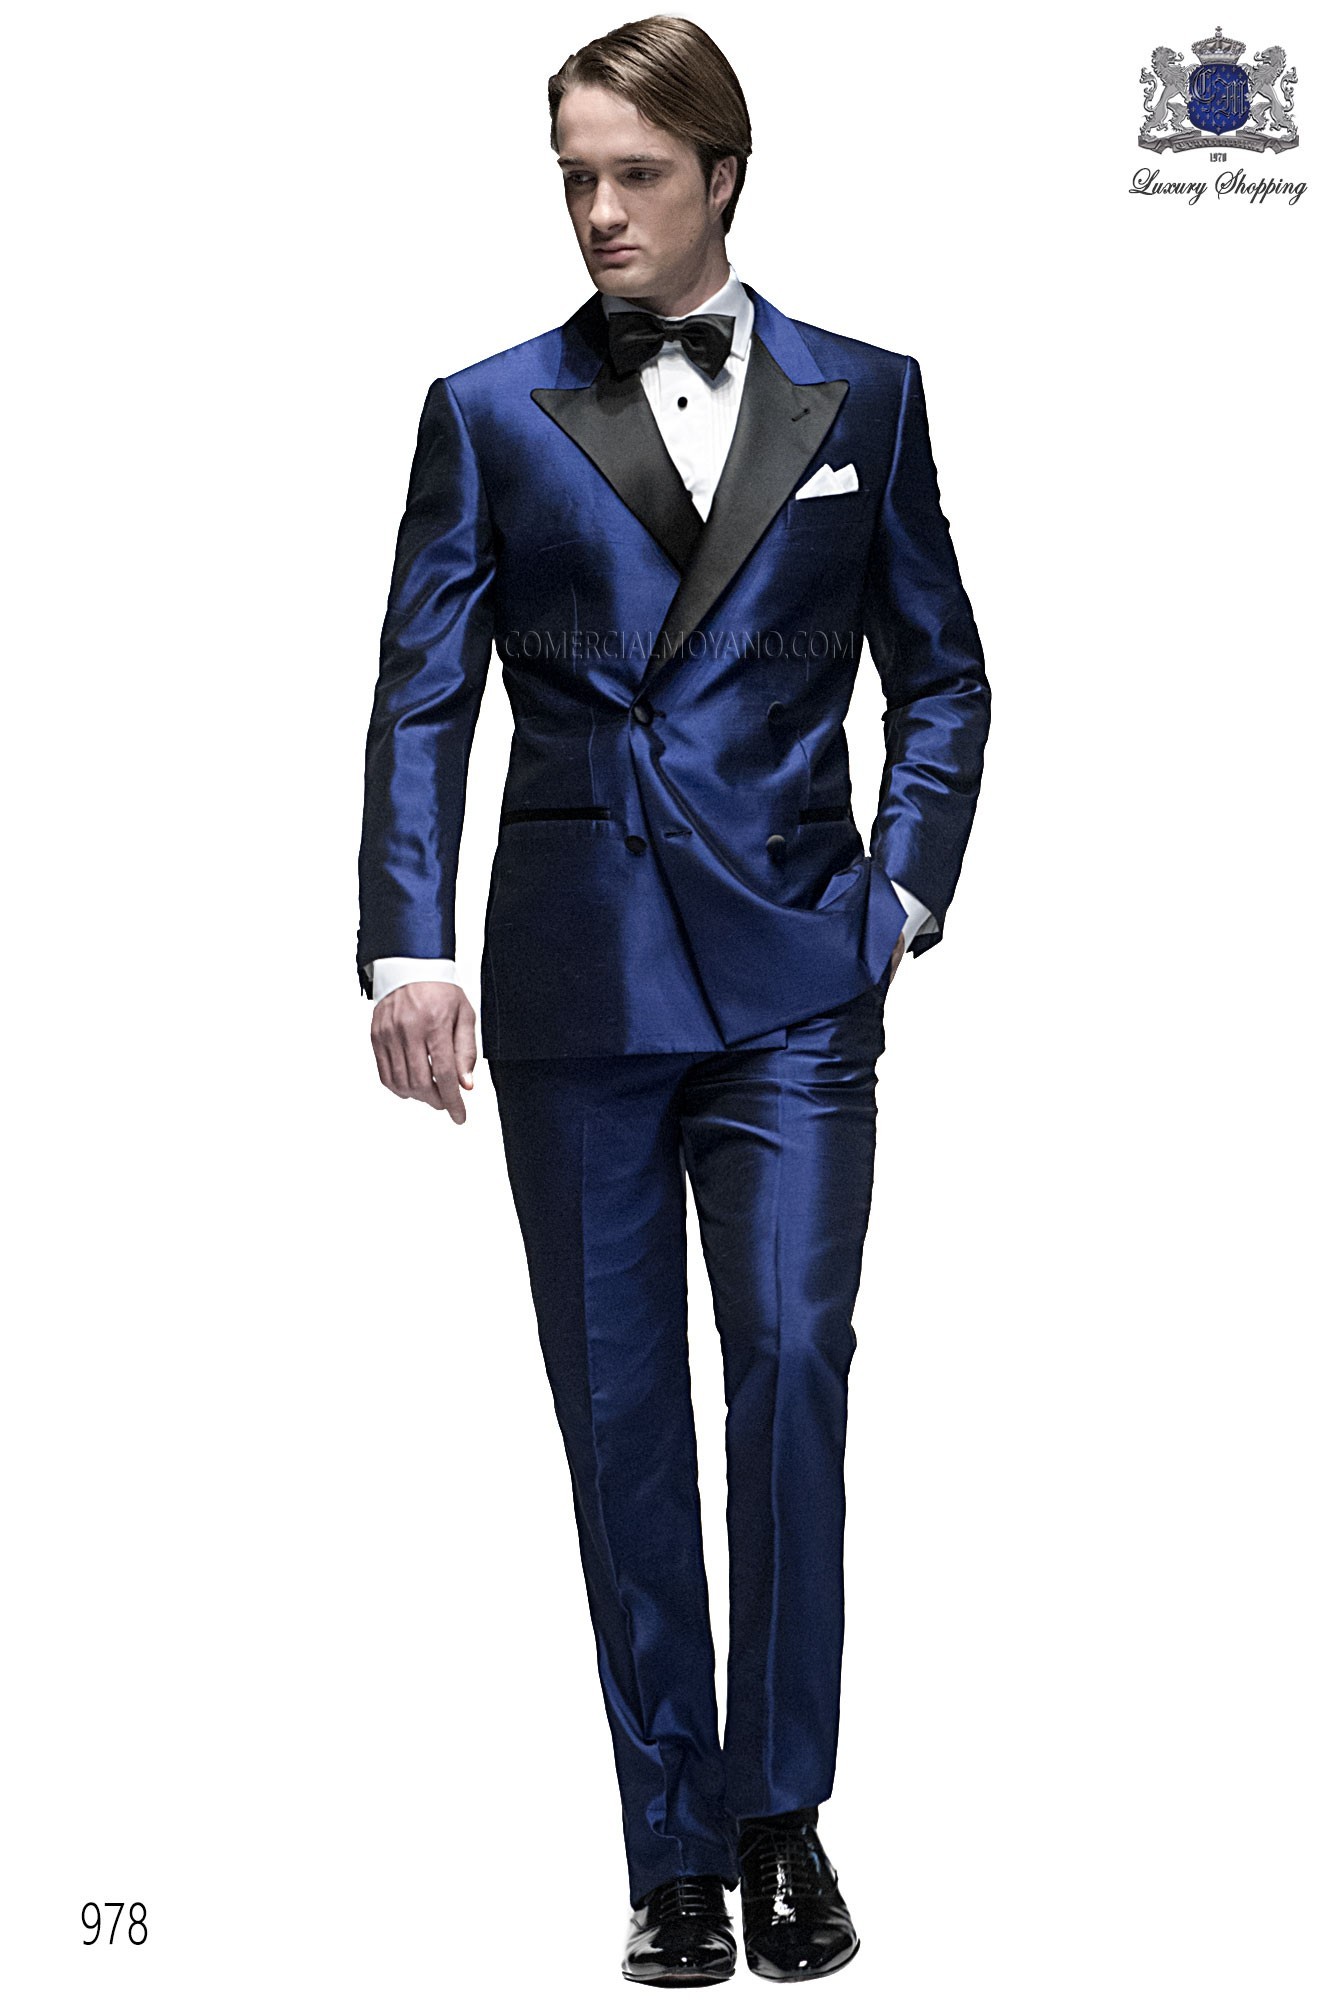 Traje de fiesta hombre azul modelo: 978 Mario Moyano colección Black Tie